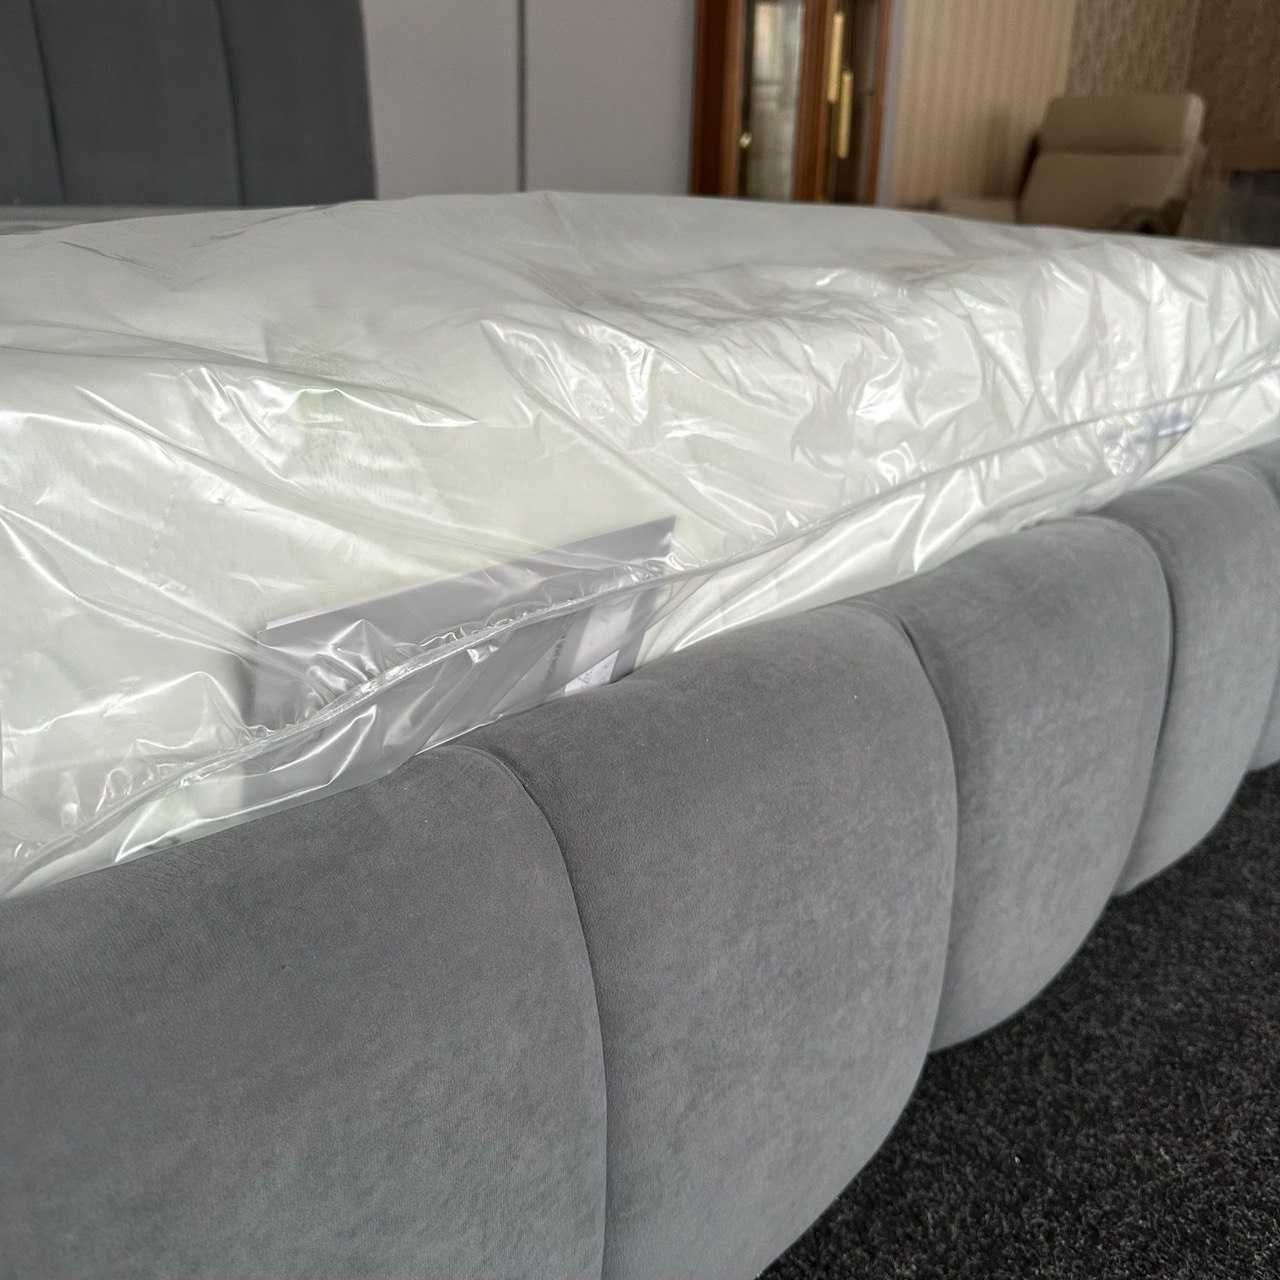 БЕЗКОШТОВНА ДОСТАВКА Нове ліжко з нішею тканина велюр